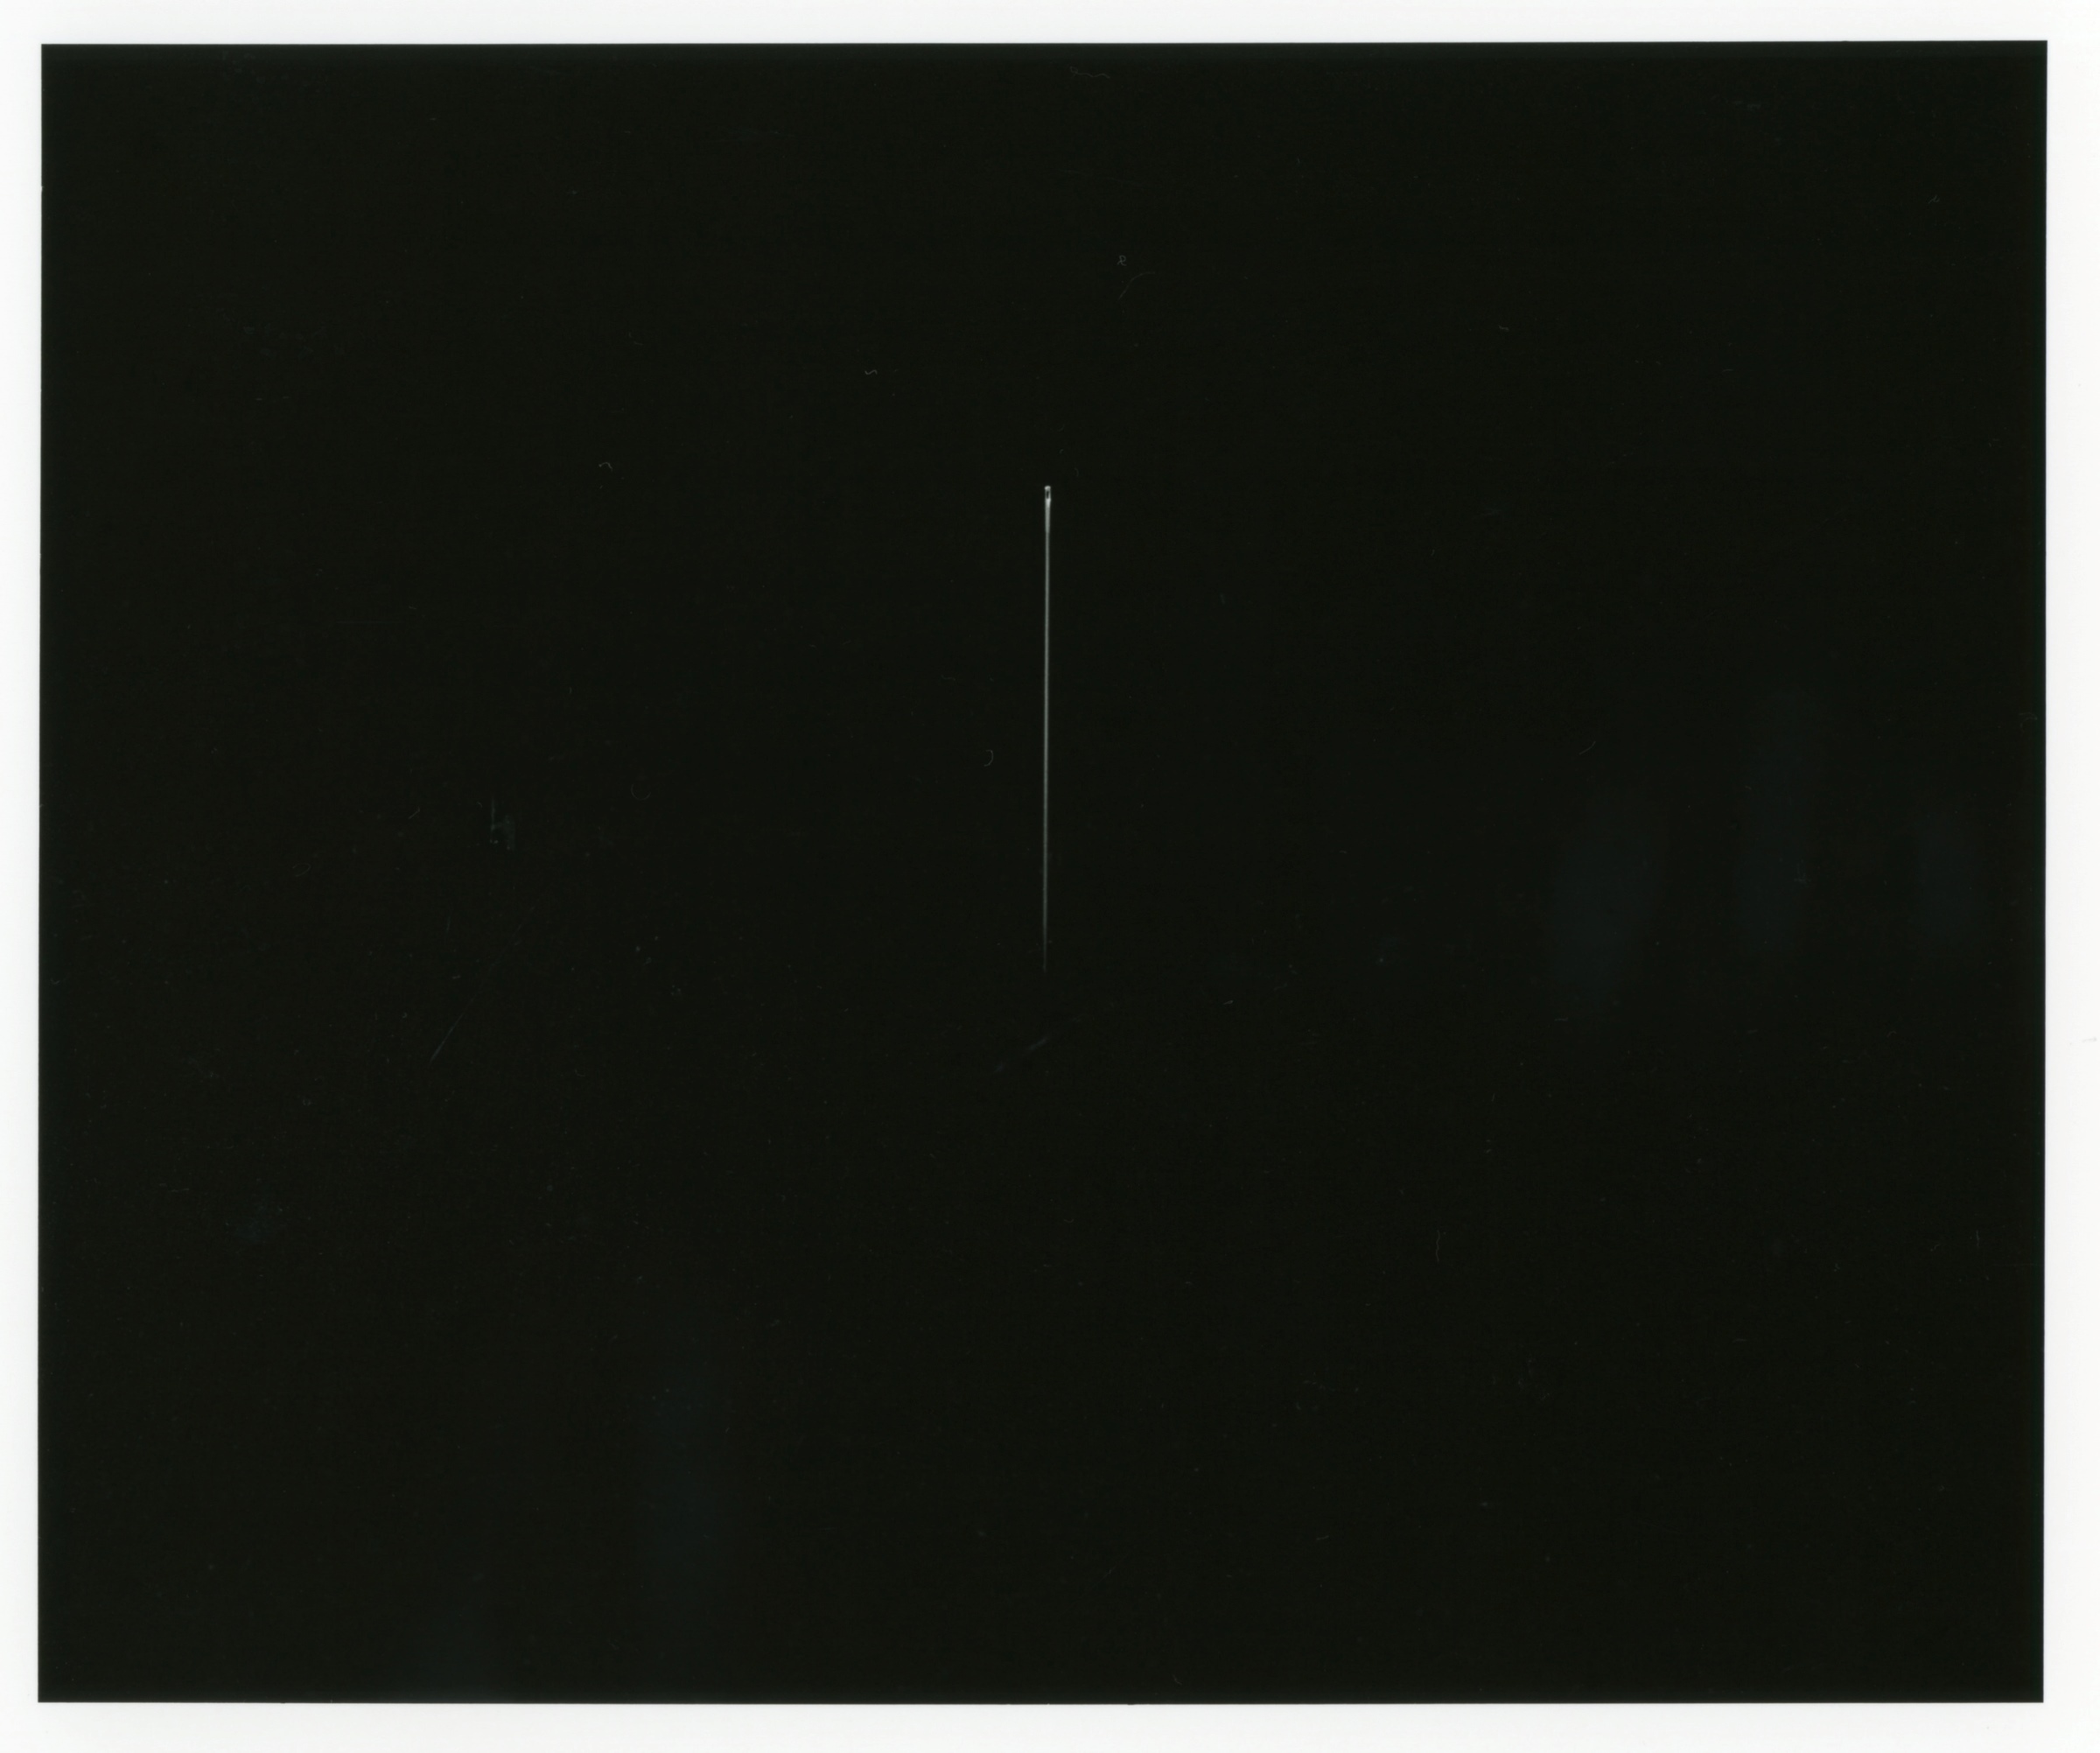 井川淳子《ここよ、今、いつでも》2003年 　ゼラチン・シルバープリント　406×508mm　※一本の針を撮影した作品